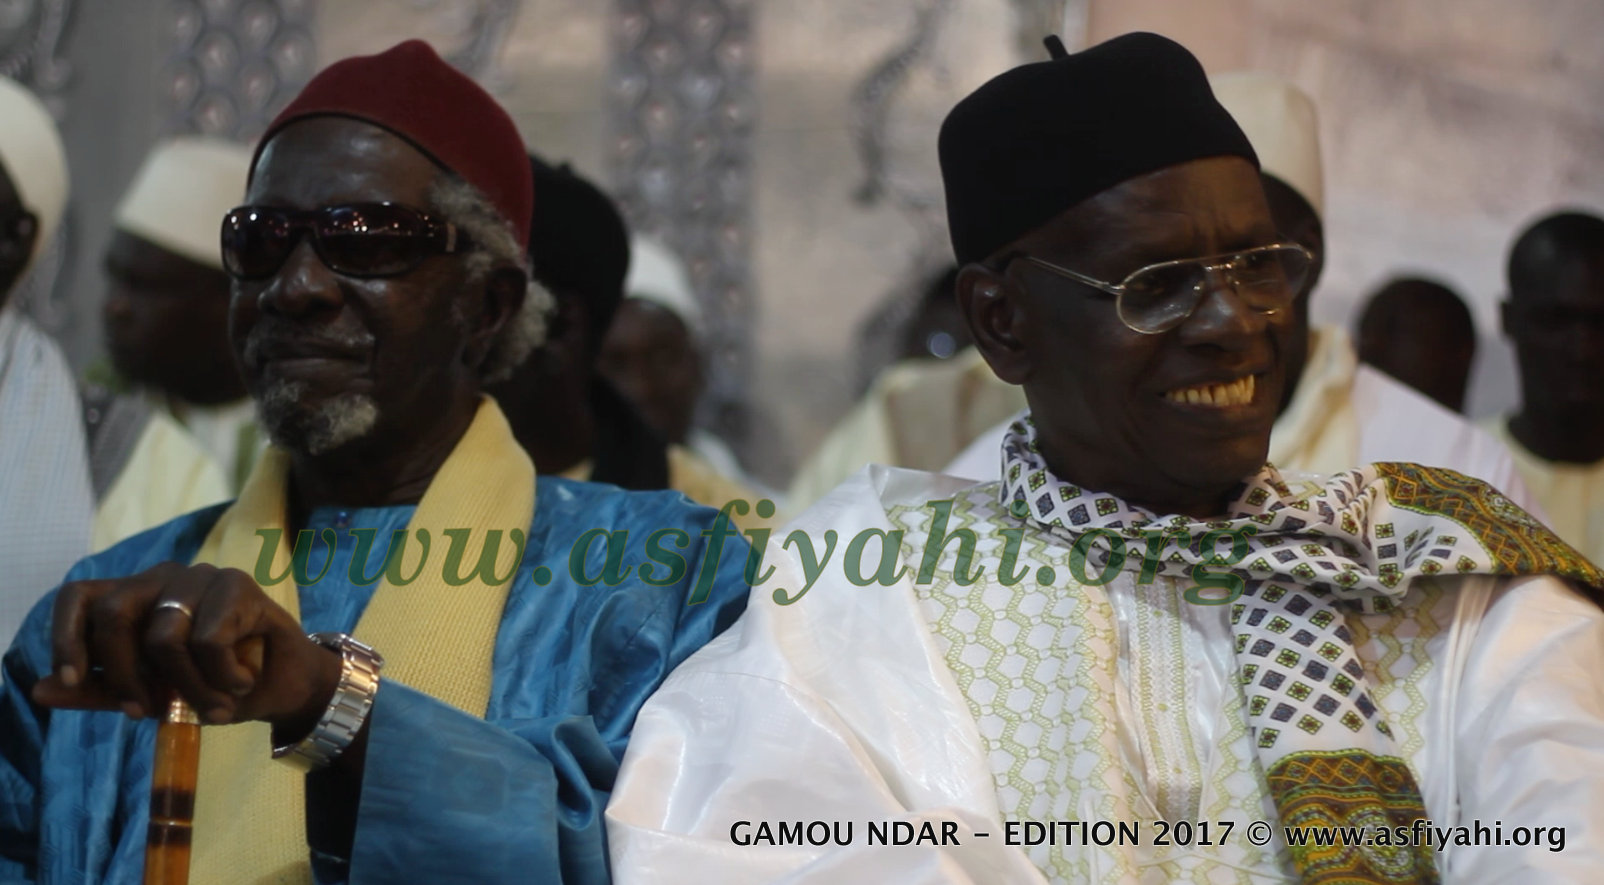 PHOTOS - 15 Avril 2017 - Les Images du Gamou Ndar 2017, co-présidé par Serigne Mbaye Sy Mansour et Serigne Pape Malick SY